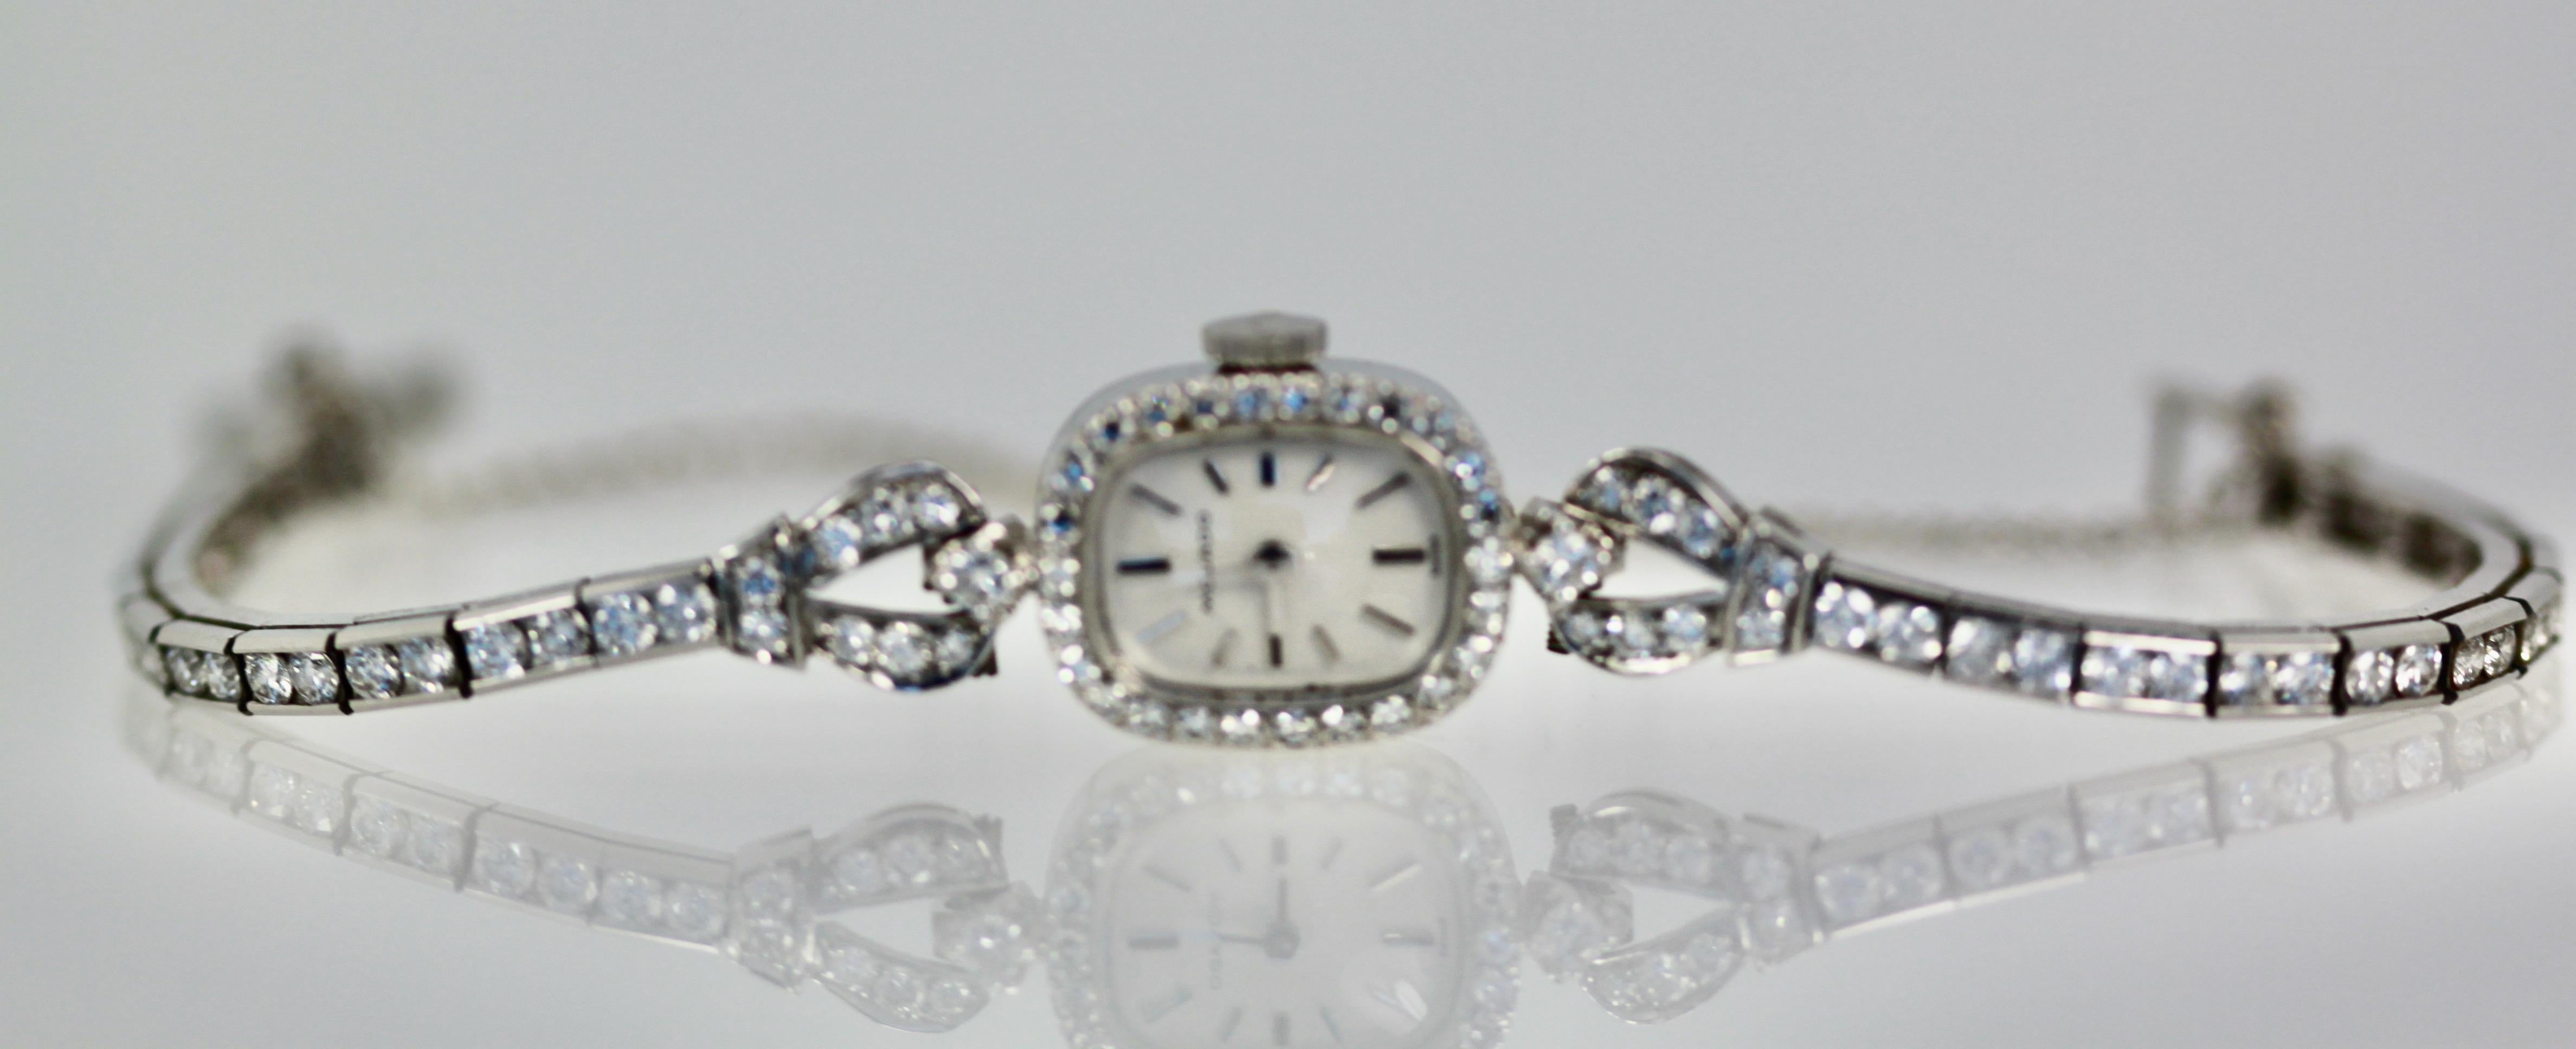 Diese schöne Diamant-Armbanduhr ist von Movado, die eine feine Uhr machen Haus ist gemacht.  Diese Uhr kam gerade von meinem Uhrenexperten zurück, um gereinigt zu werden und die funktionierenden Teile auf gutes Timing zu überprüfen.  Das Innere